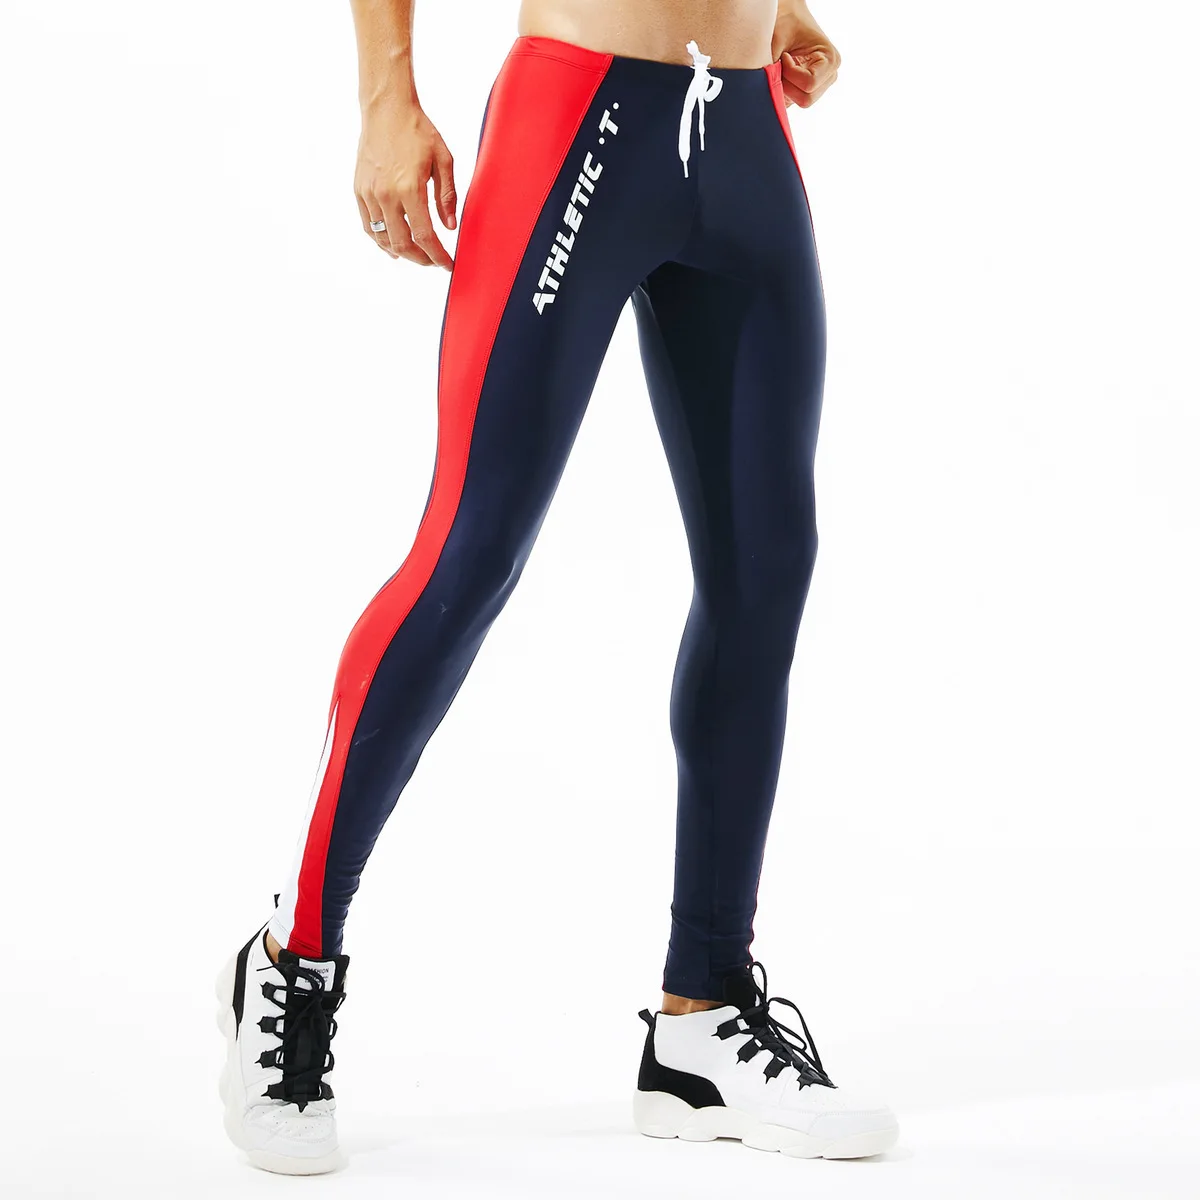 Сексуальные мужские леггинсы s, мужские тренировочные леггинсы для тренировок, колготки для бега, быстросохнущие спортивные компрессионные штаны для мужчин, спортивная одежда